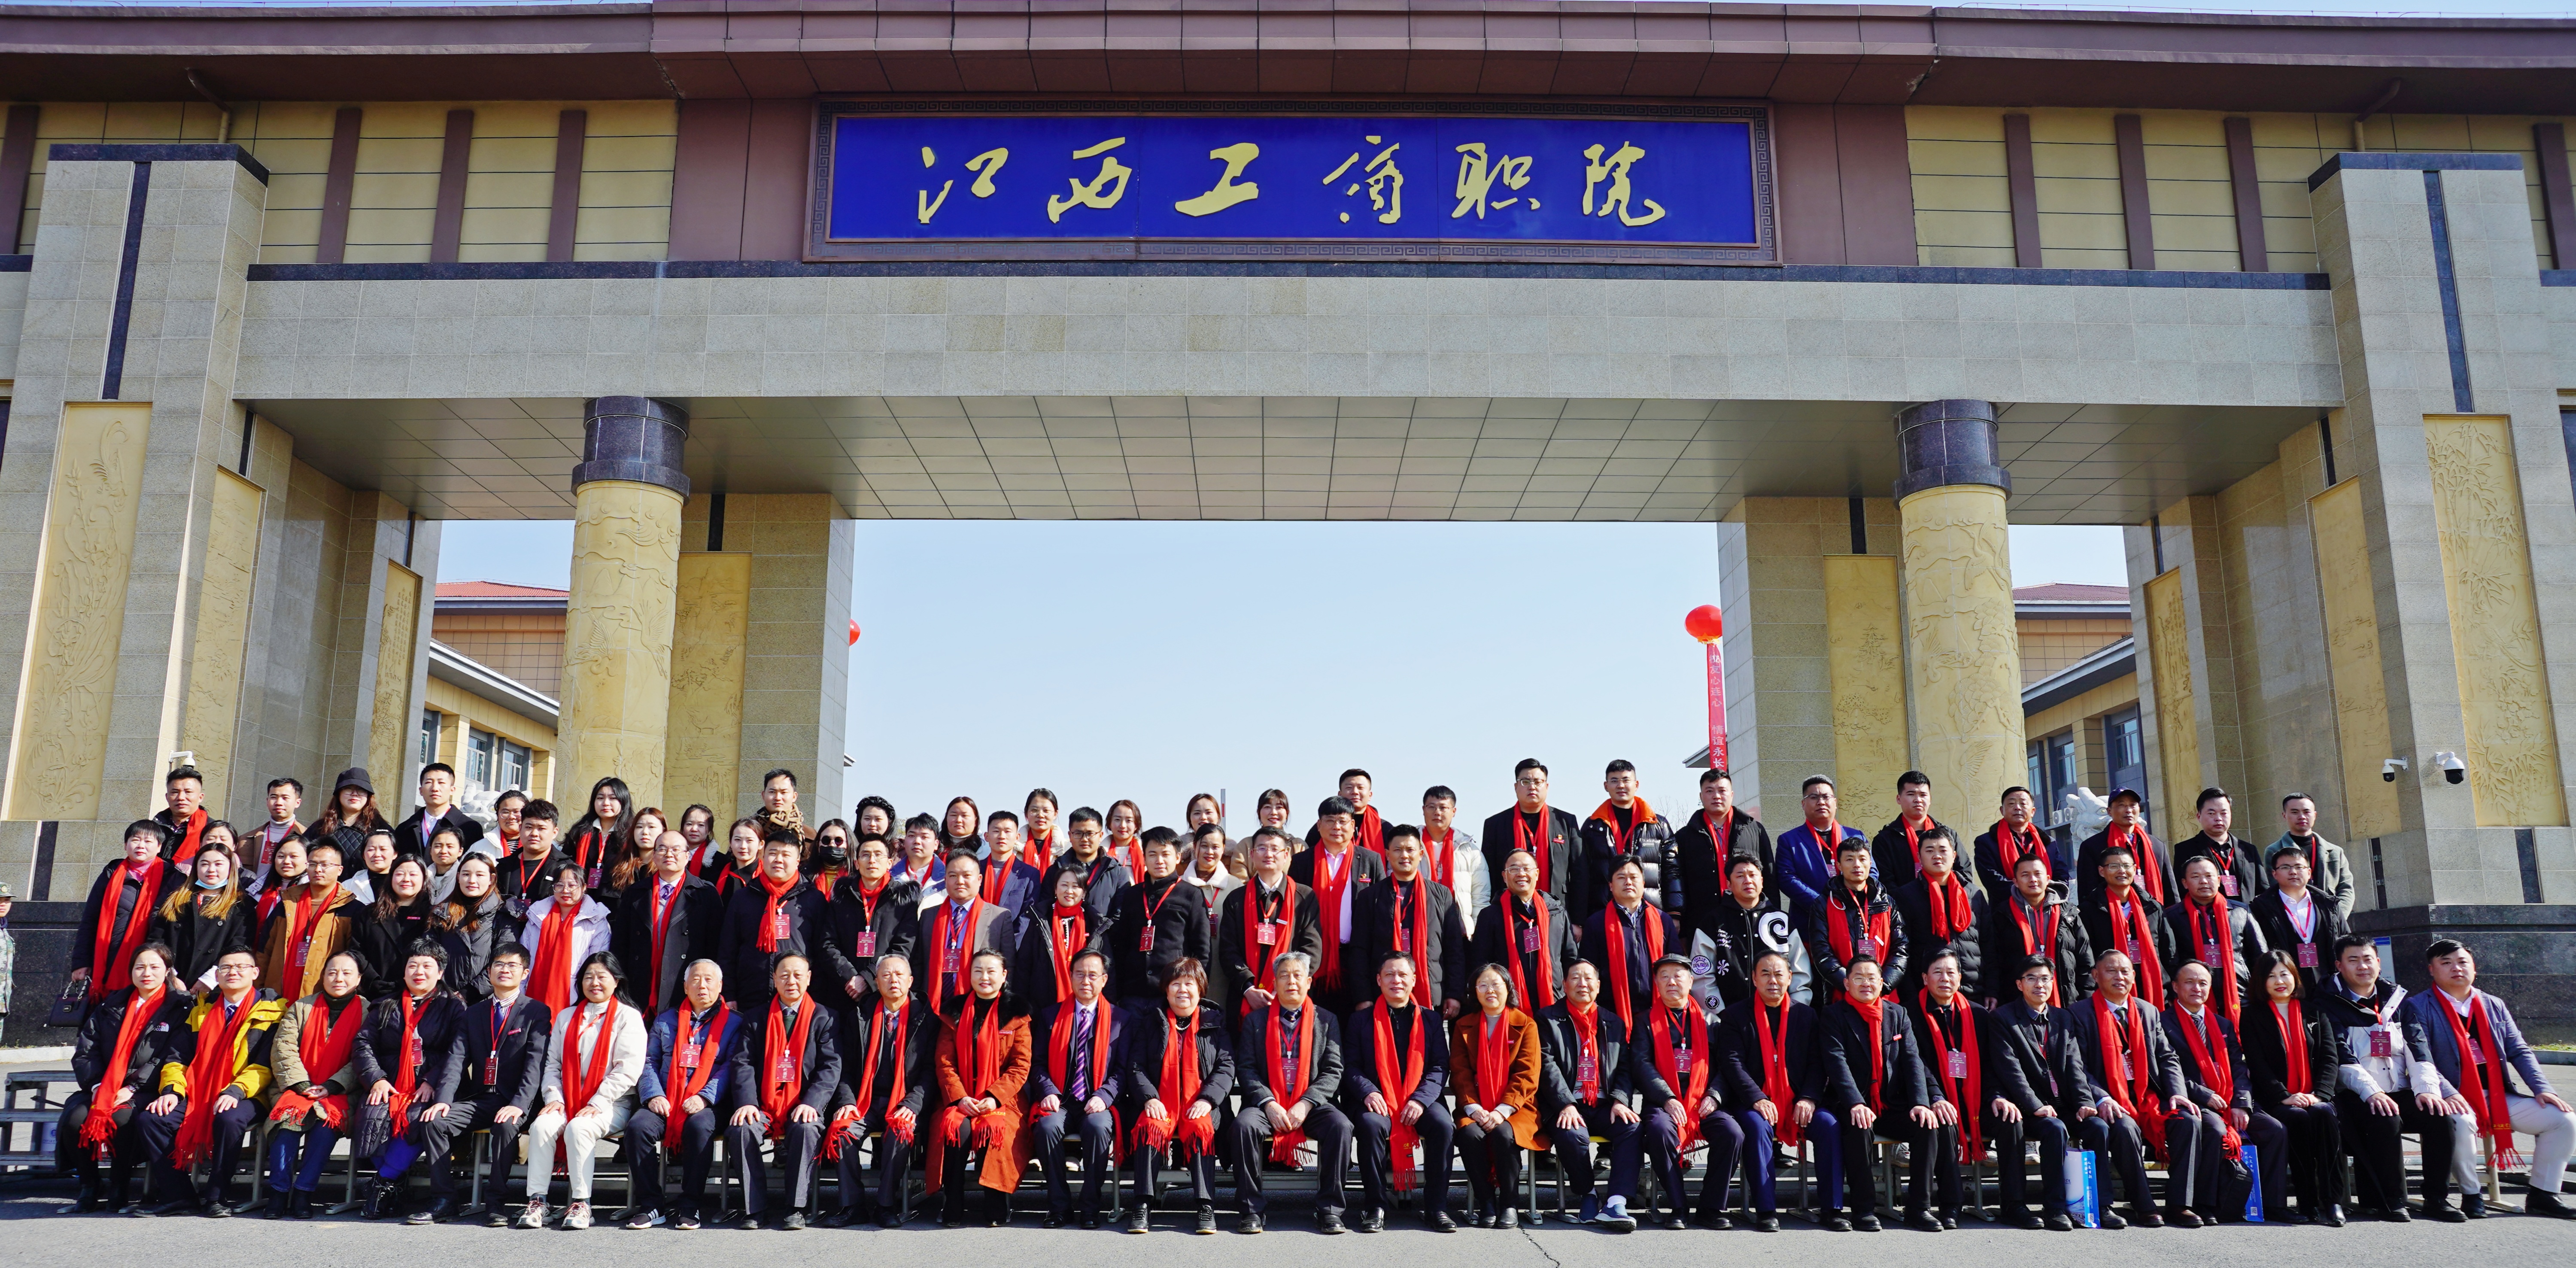 维多利亚vic119中国线路召开校友总会成立大会暨第一届第一次理事会